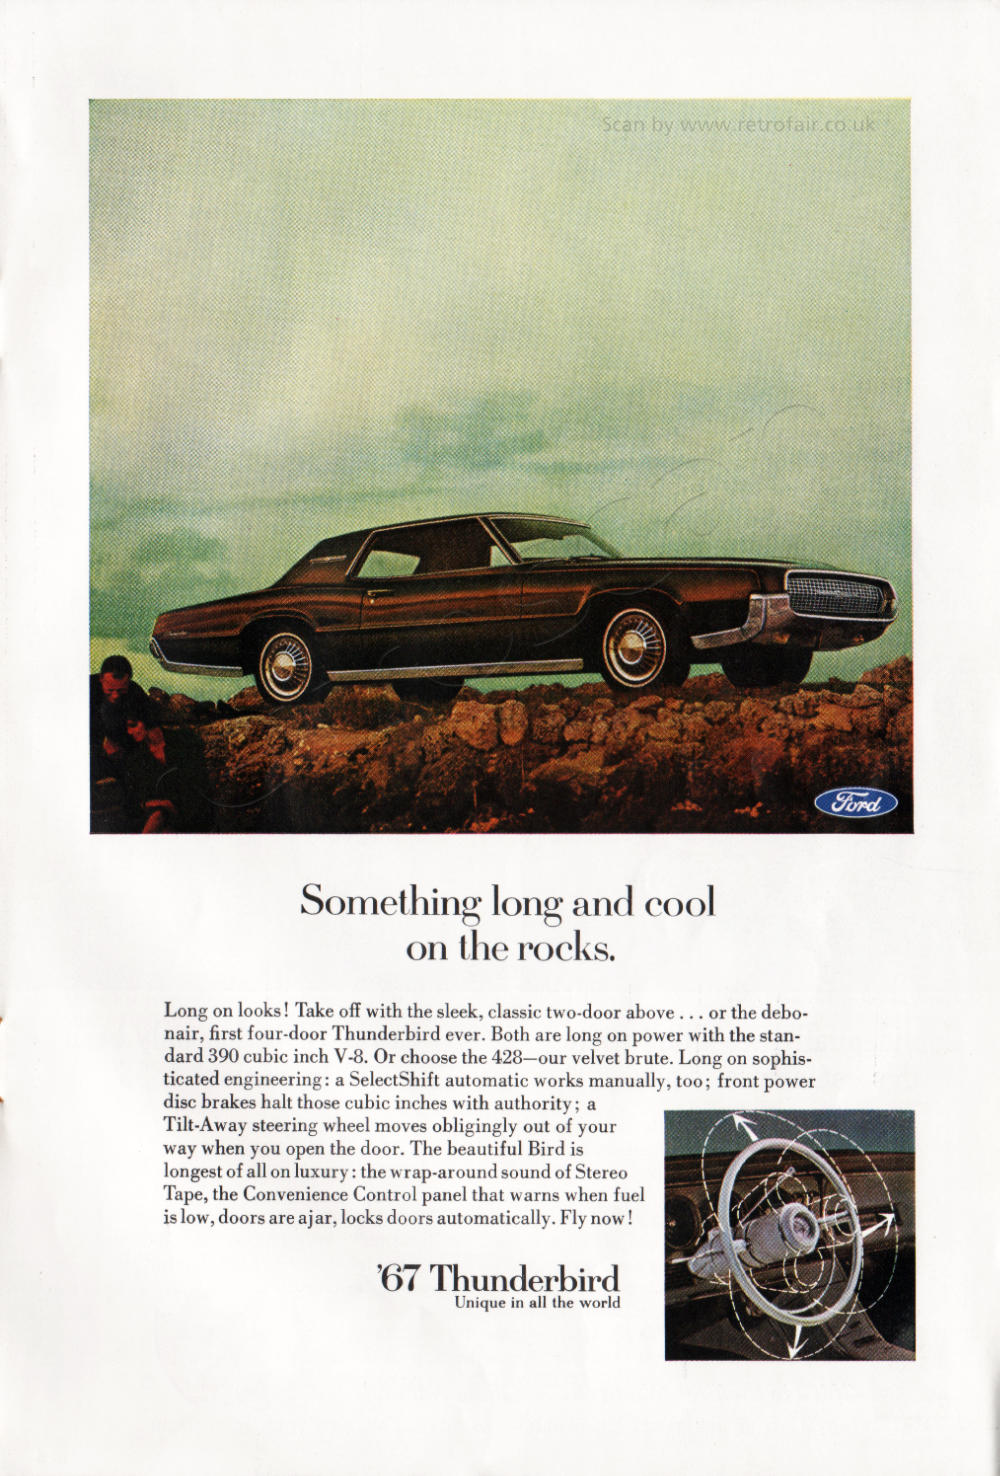 1966 Ford Thunderbird - unframed vintage ad